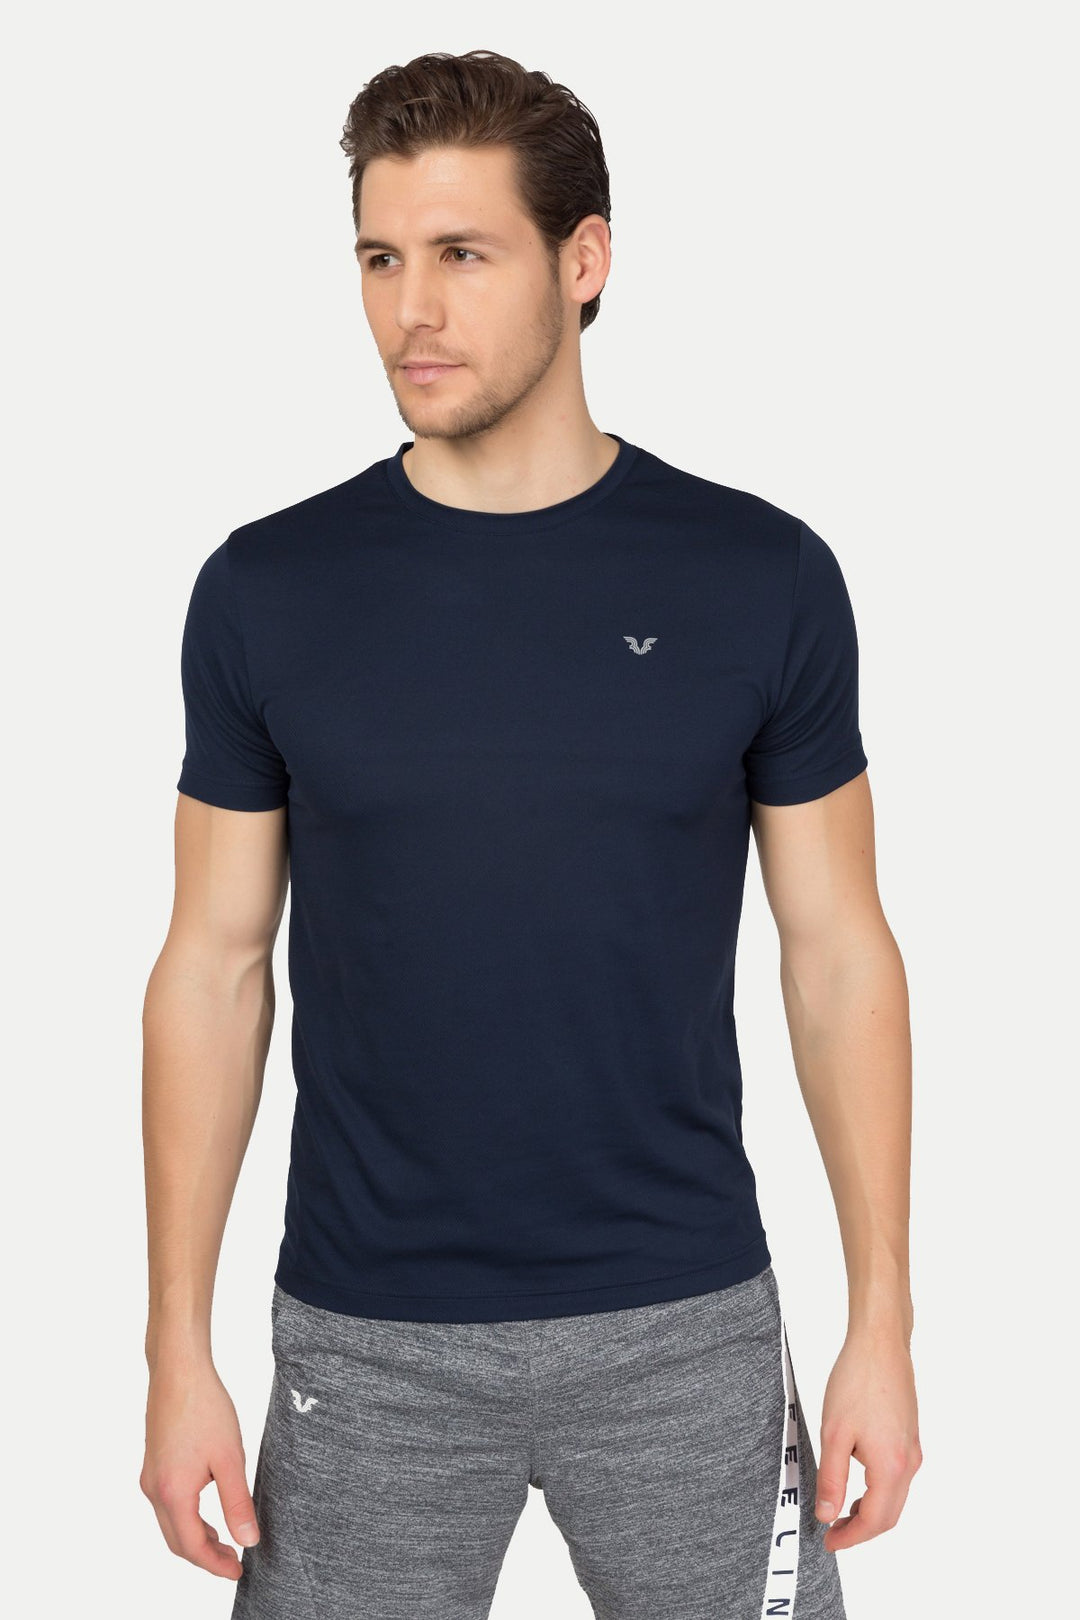 Flexibles Herren-T-Shirt